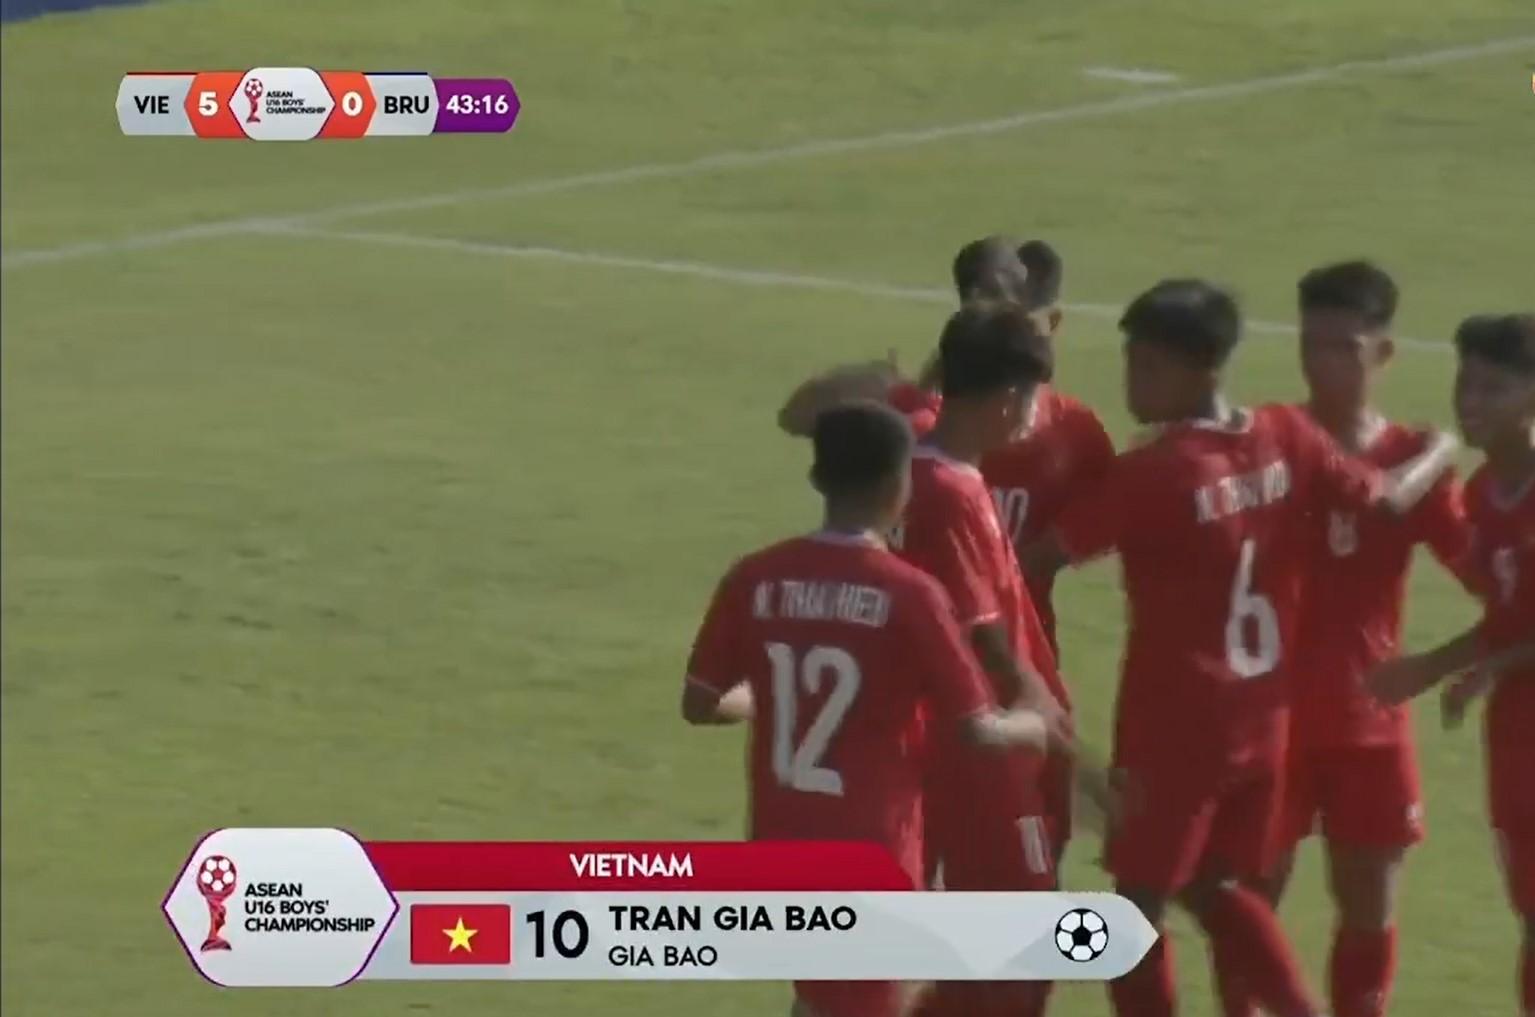 Trực tiếp U16 Việt Nam 5-0 U16 Brunei: Vỡ trận 485568